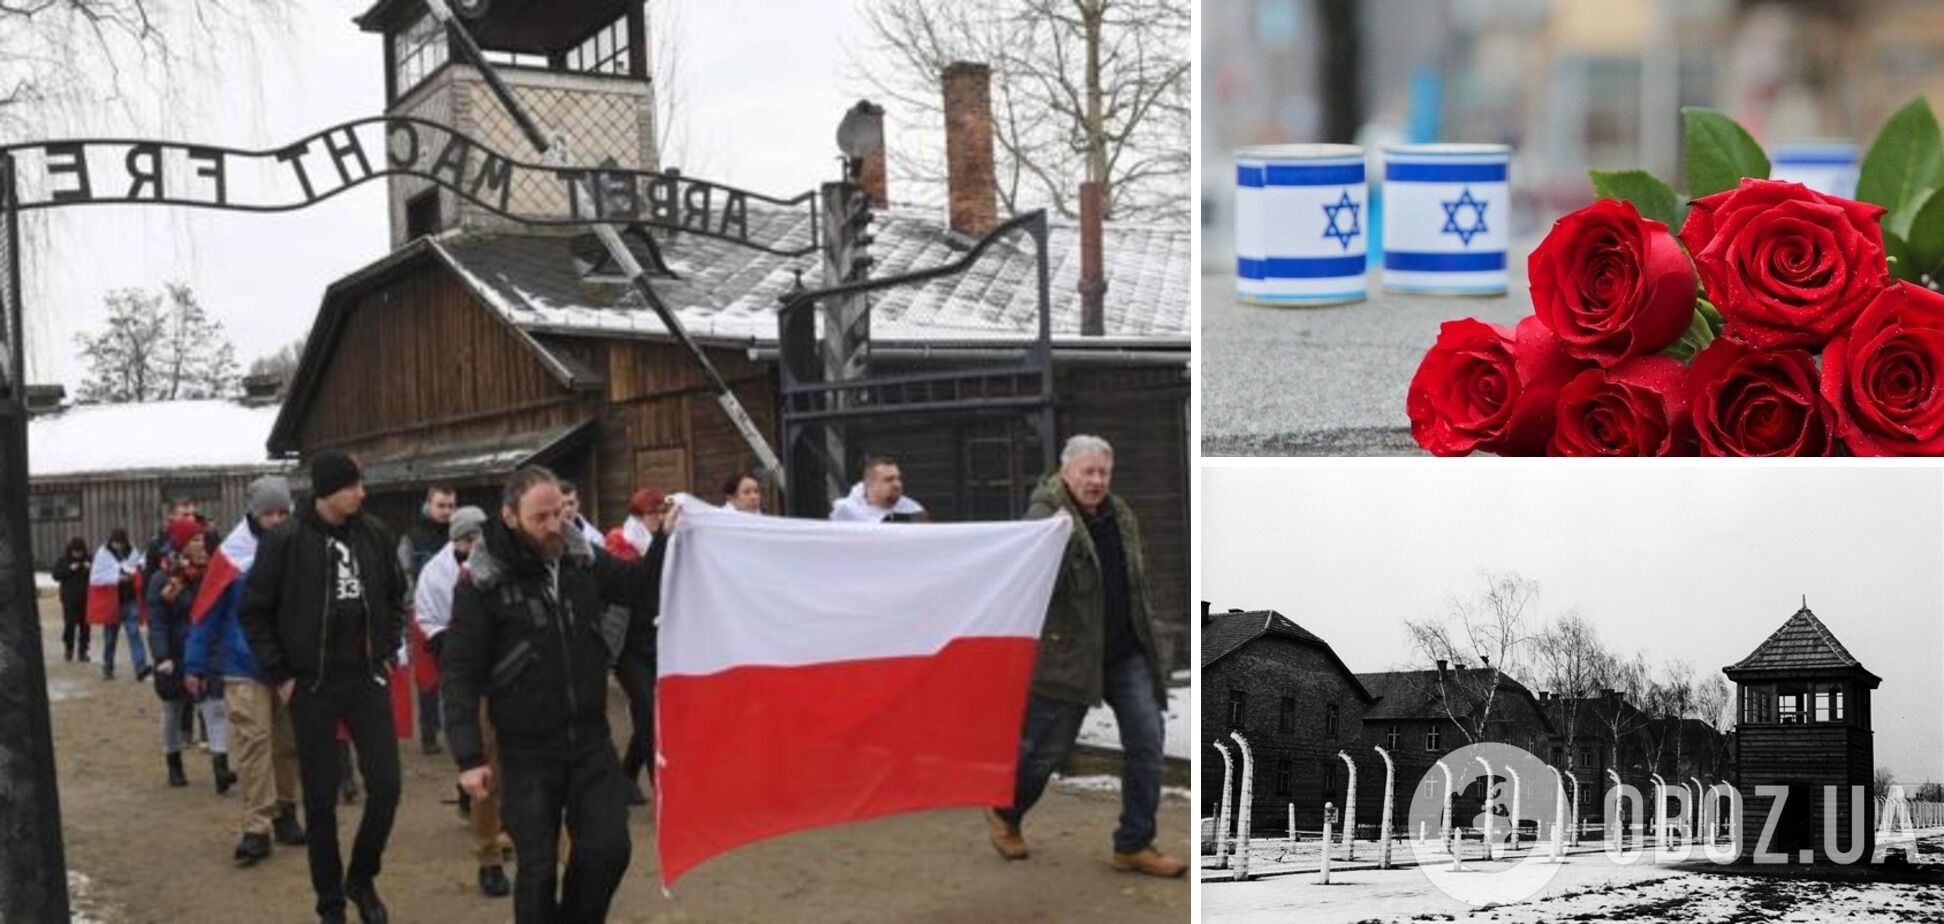 Польша не пригласила представителей РФ на годовщину освобождения Освенцима из-за агрессии Кремля против Украины